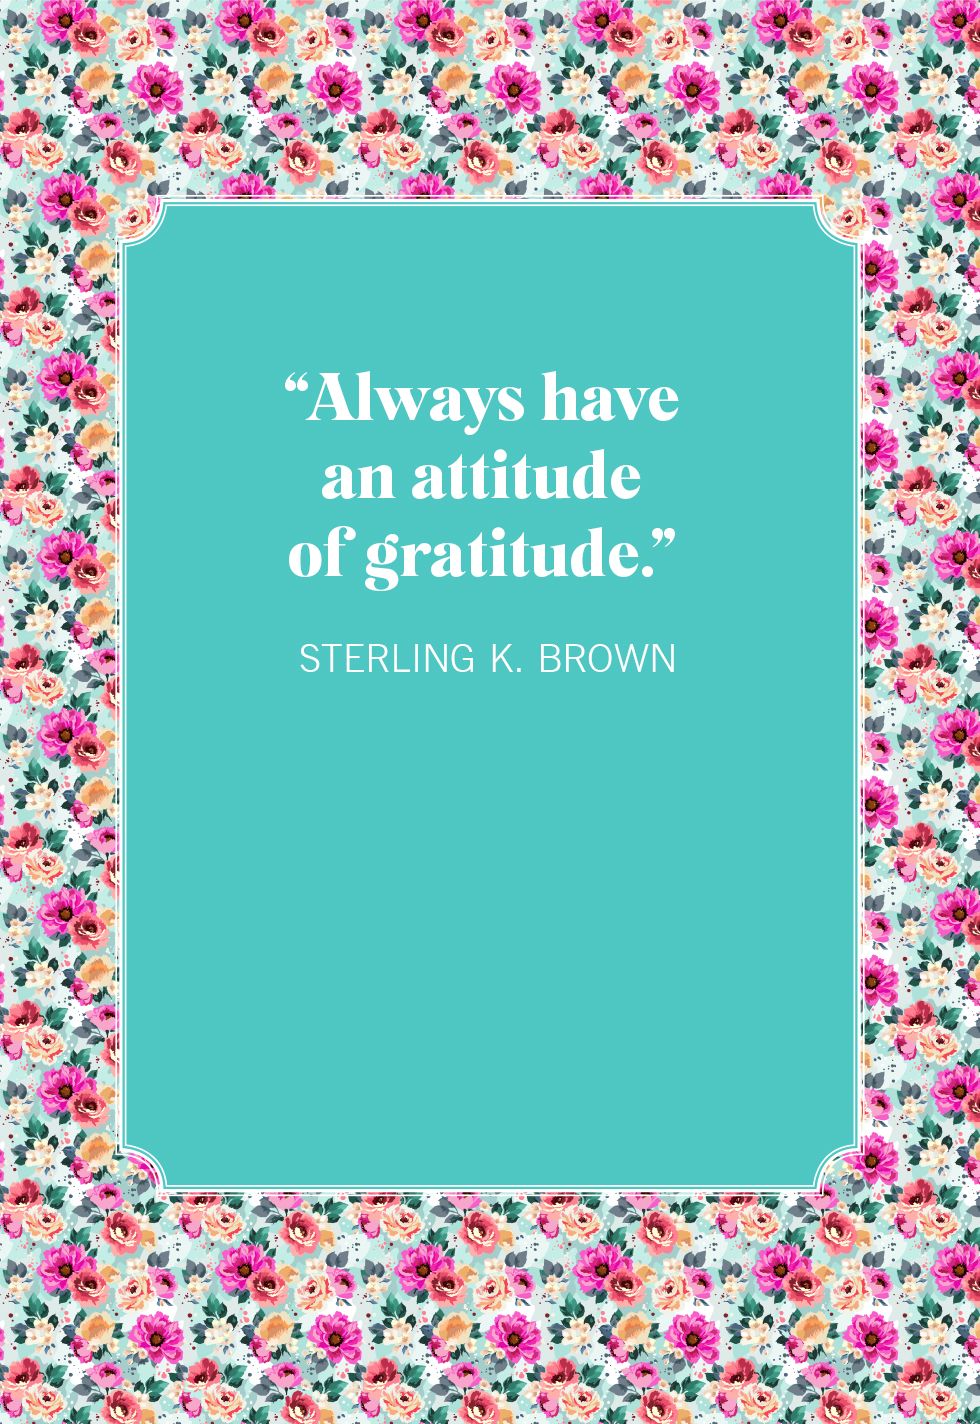 35 Best Gratitude Quotes - Best Short, Famous Quotes About Gratitude